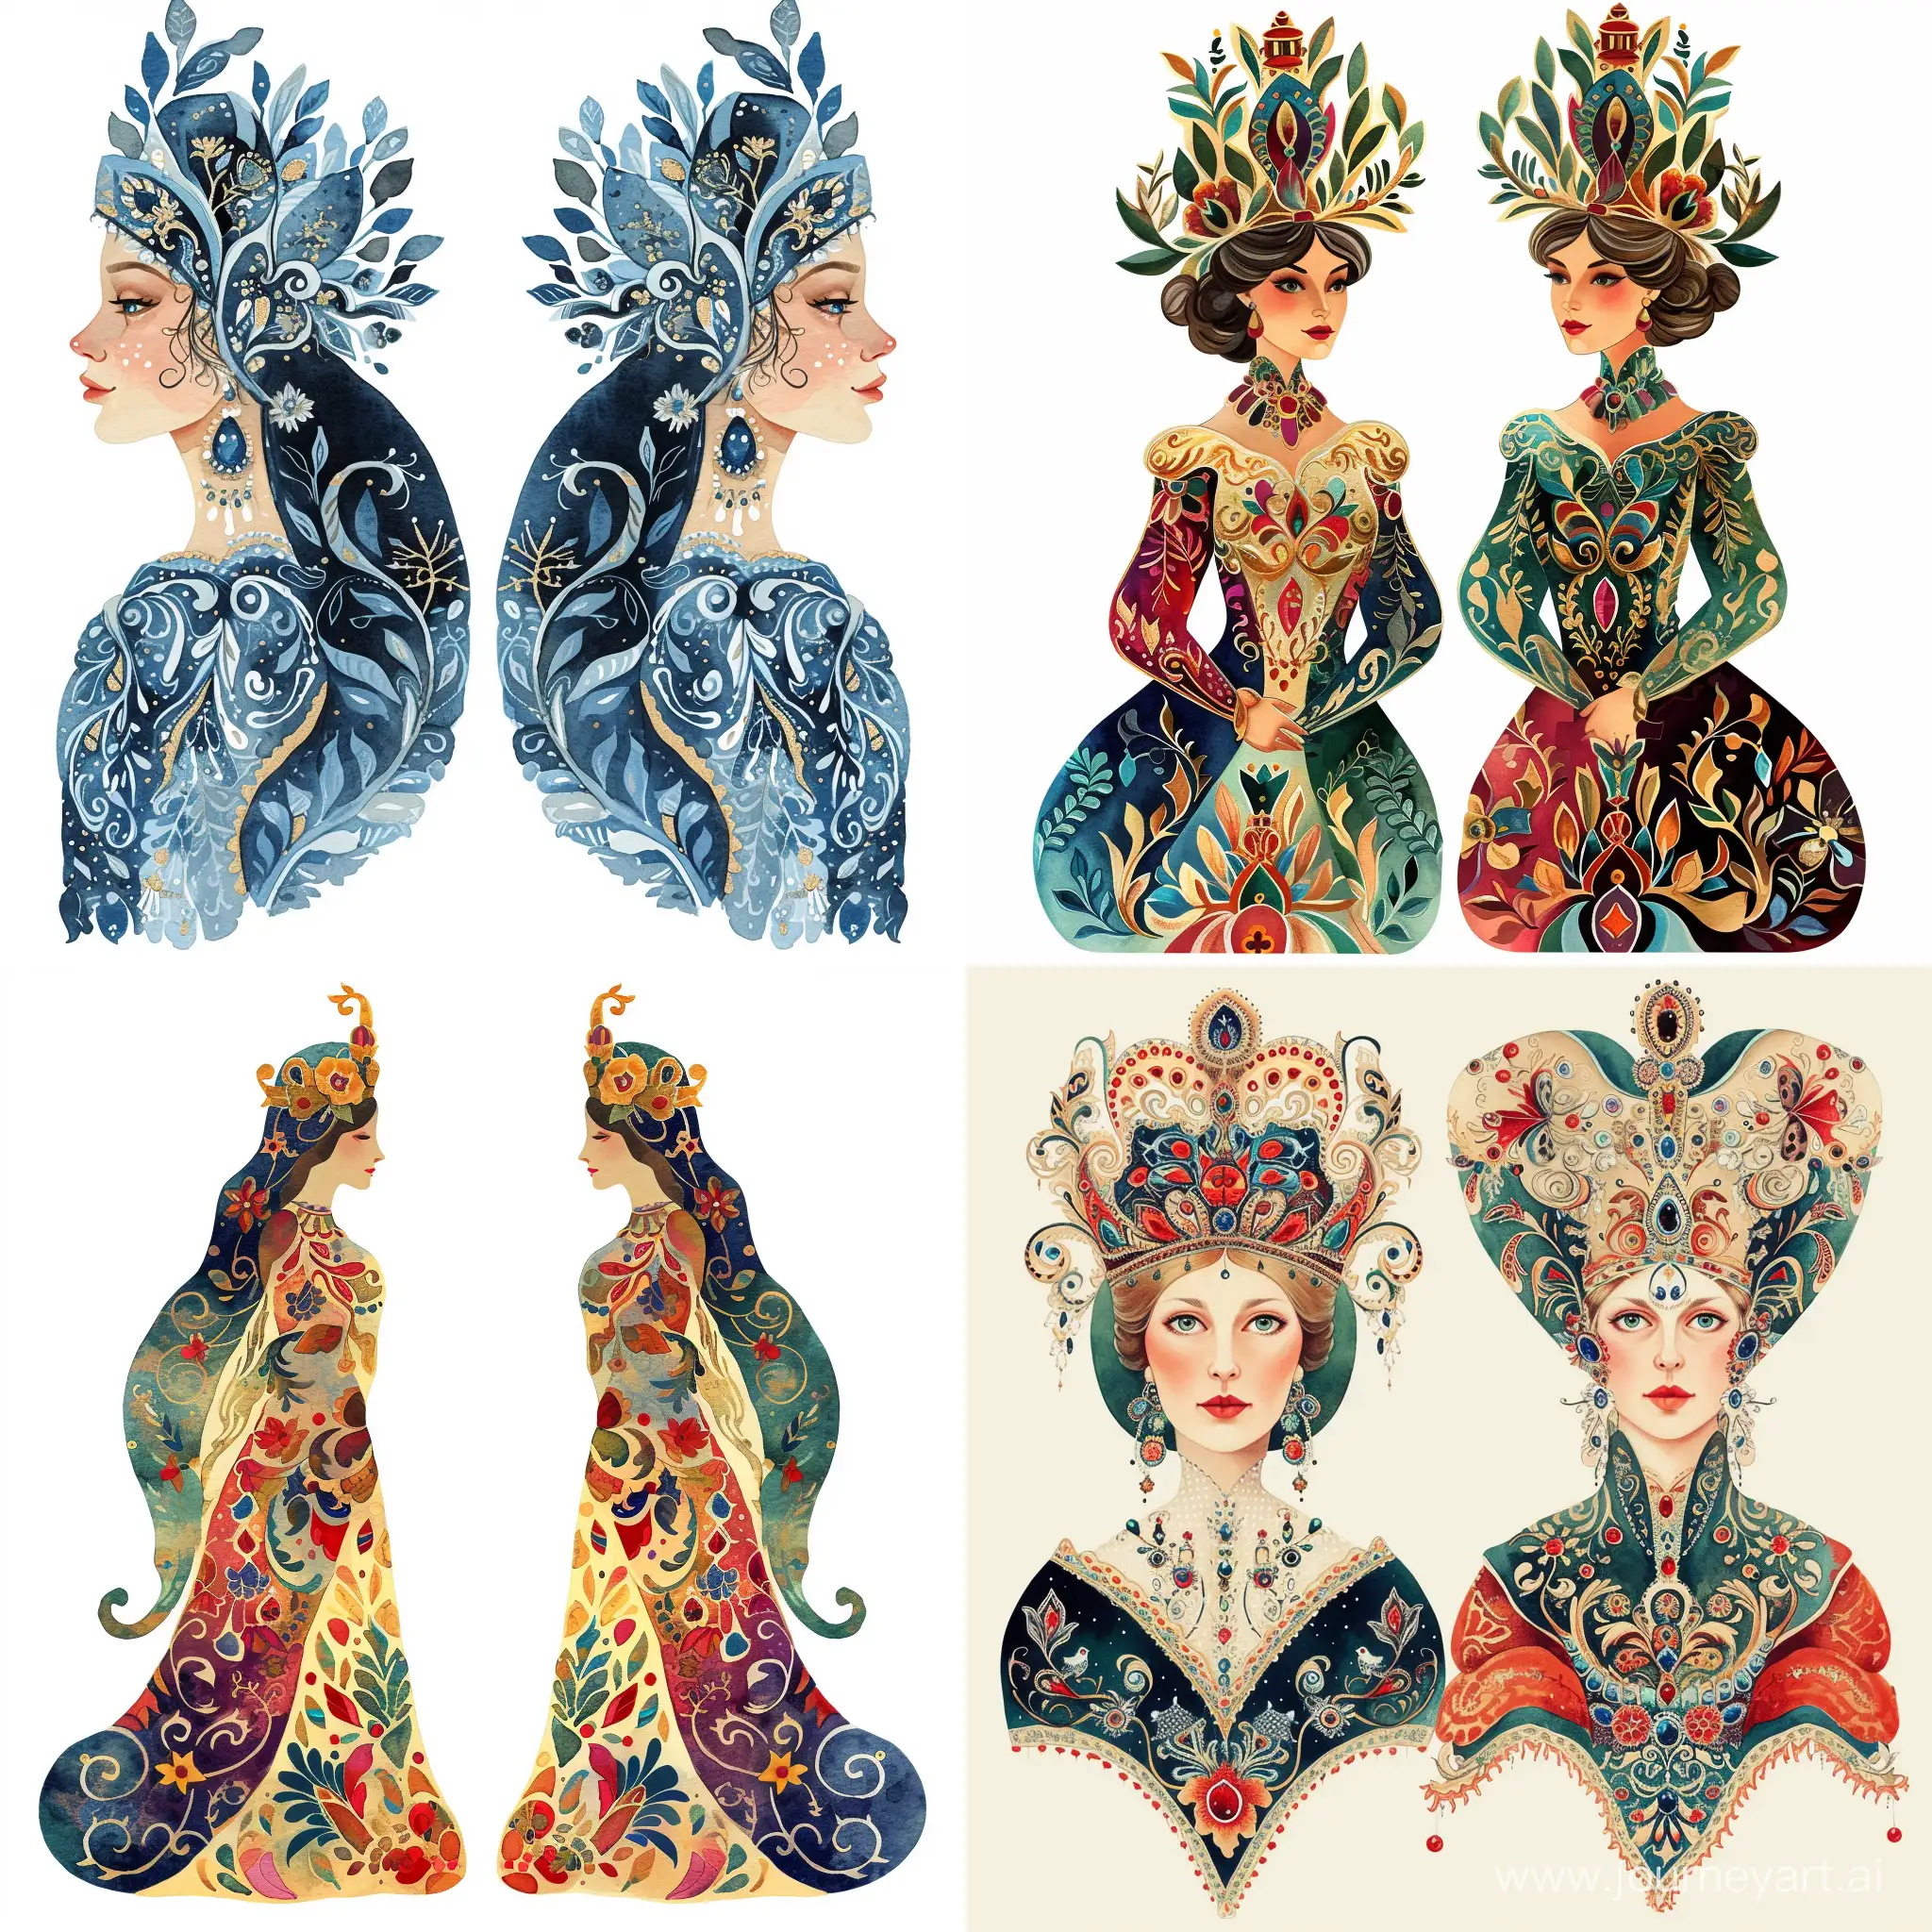 Russian-Queen-Ornaments-Reflective-Watercolor-Illustrations